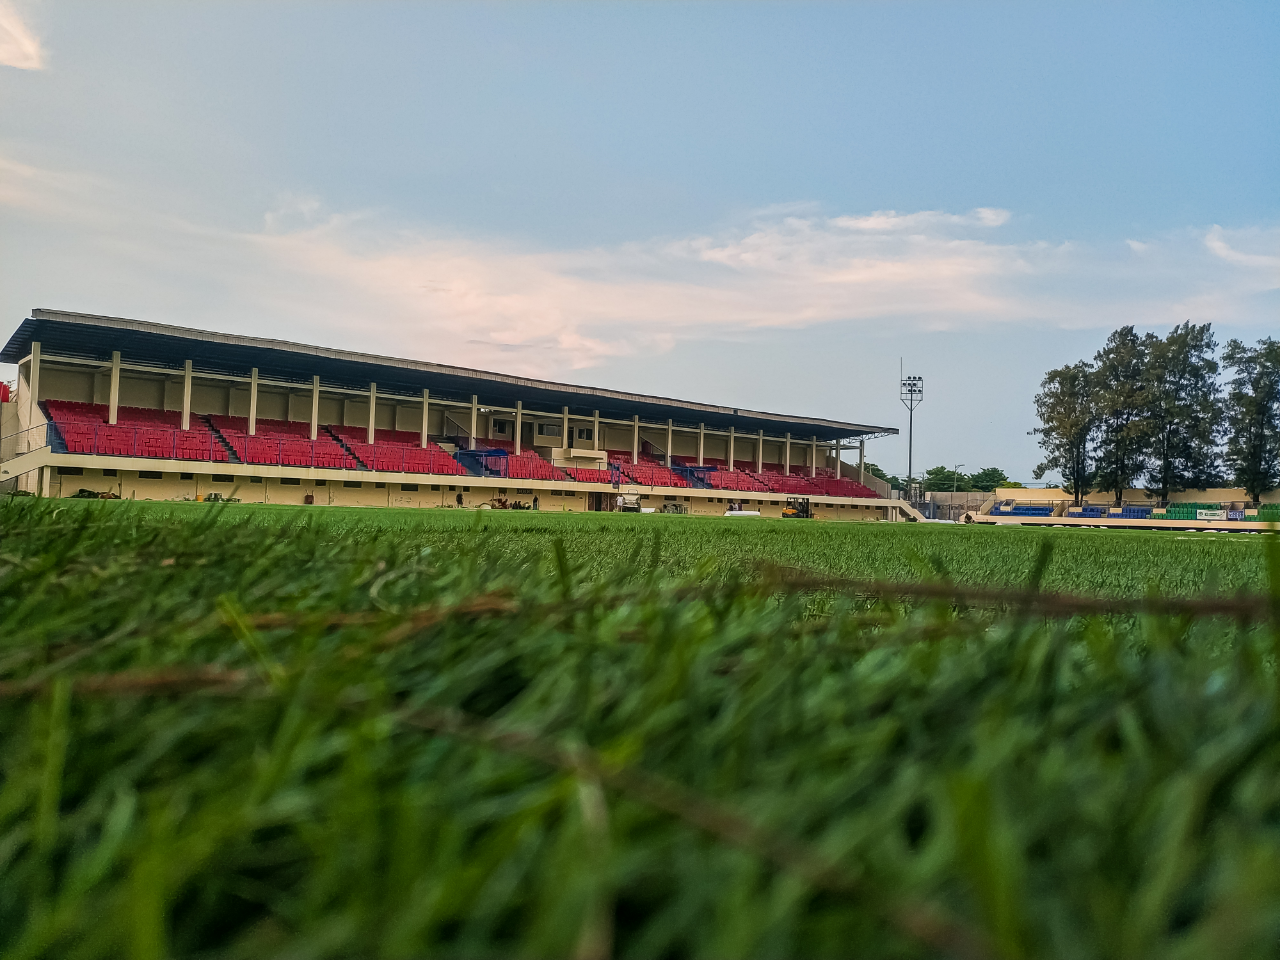 Stadion Citarum Semarang Tampil dengan Wajah Baru, Gunakan Rumput Standar FIFA

